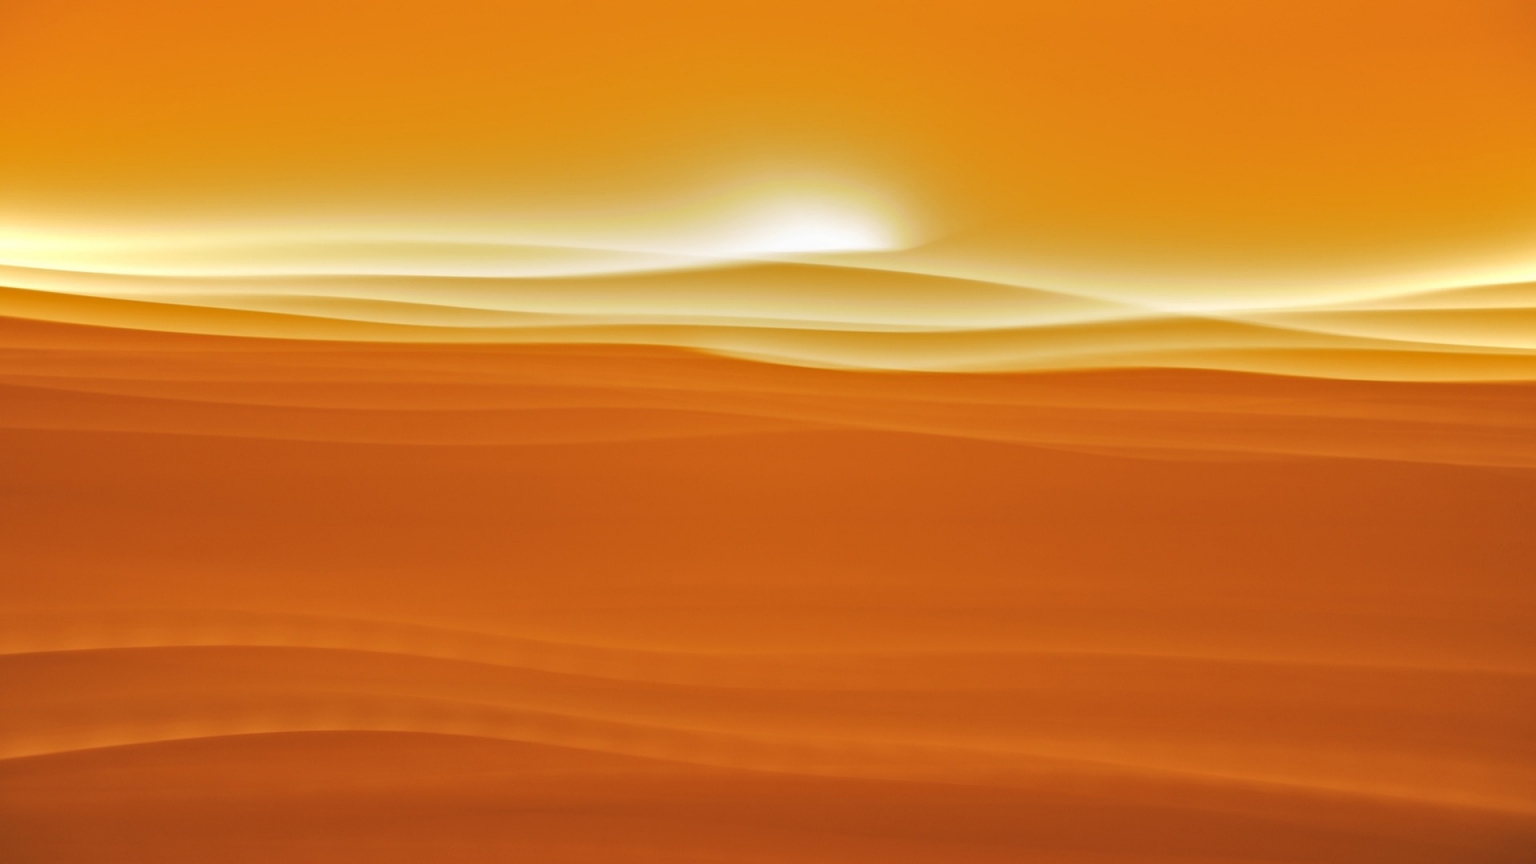 Desert sunlight for 1536 x 864 HDTV resolution